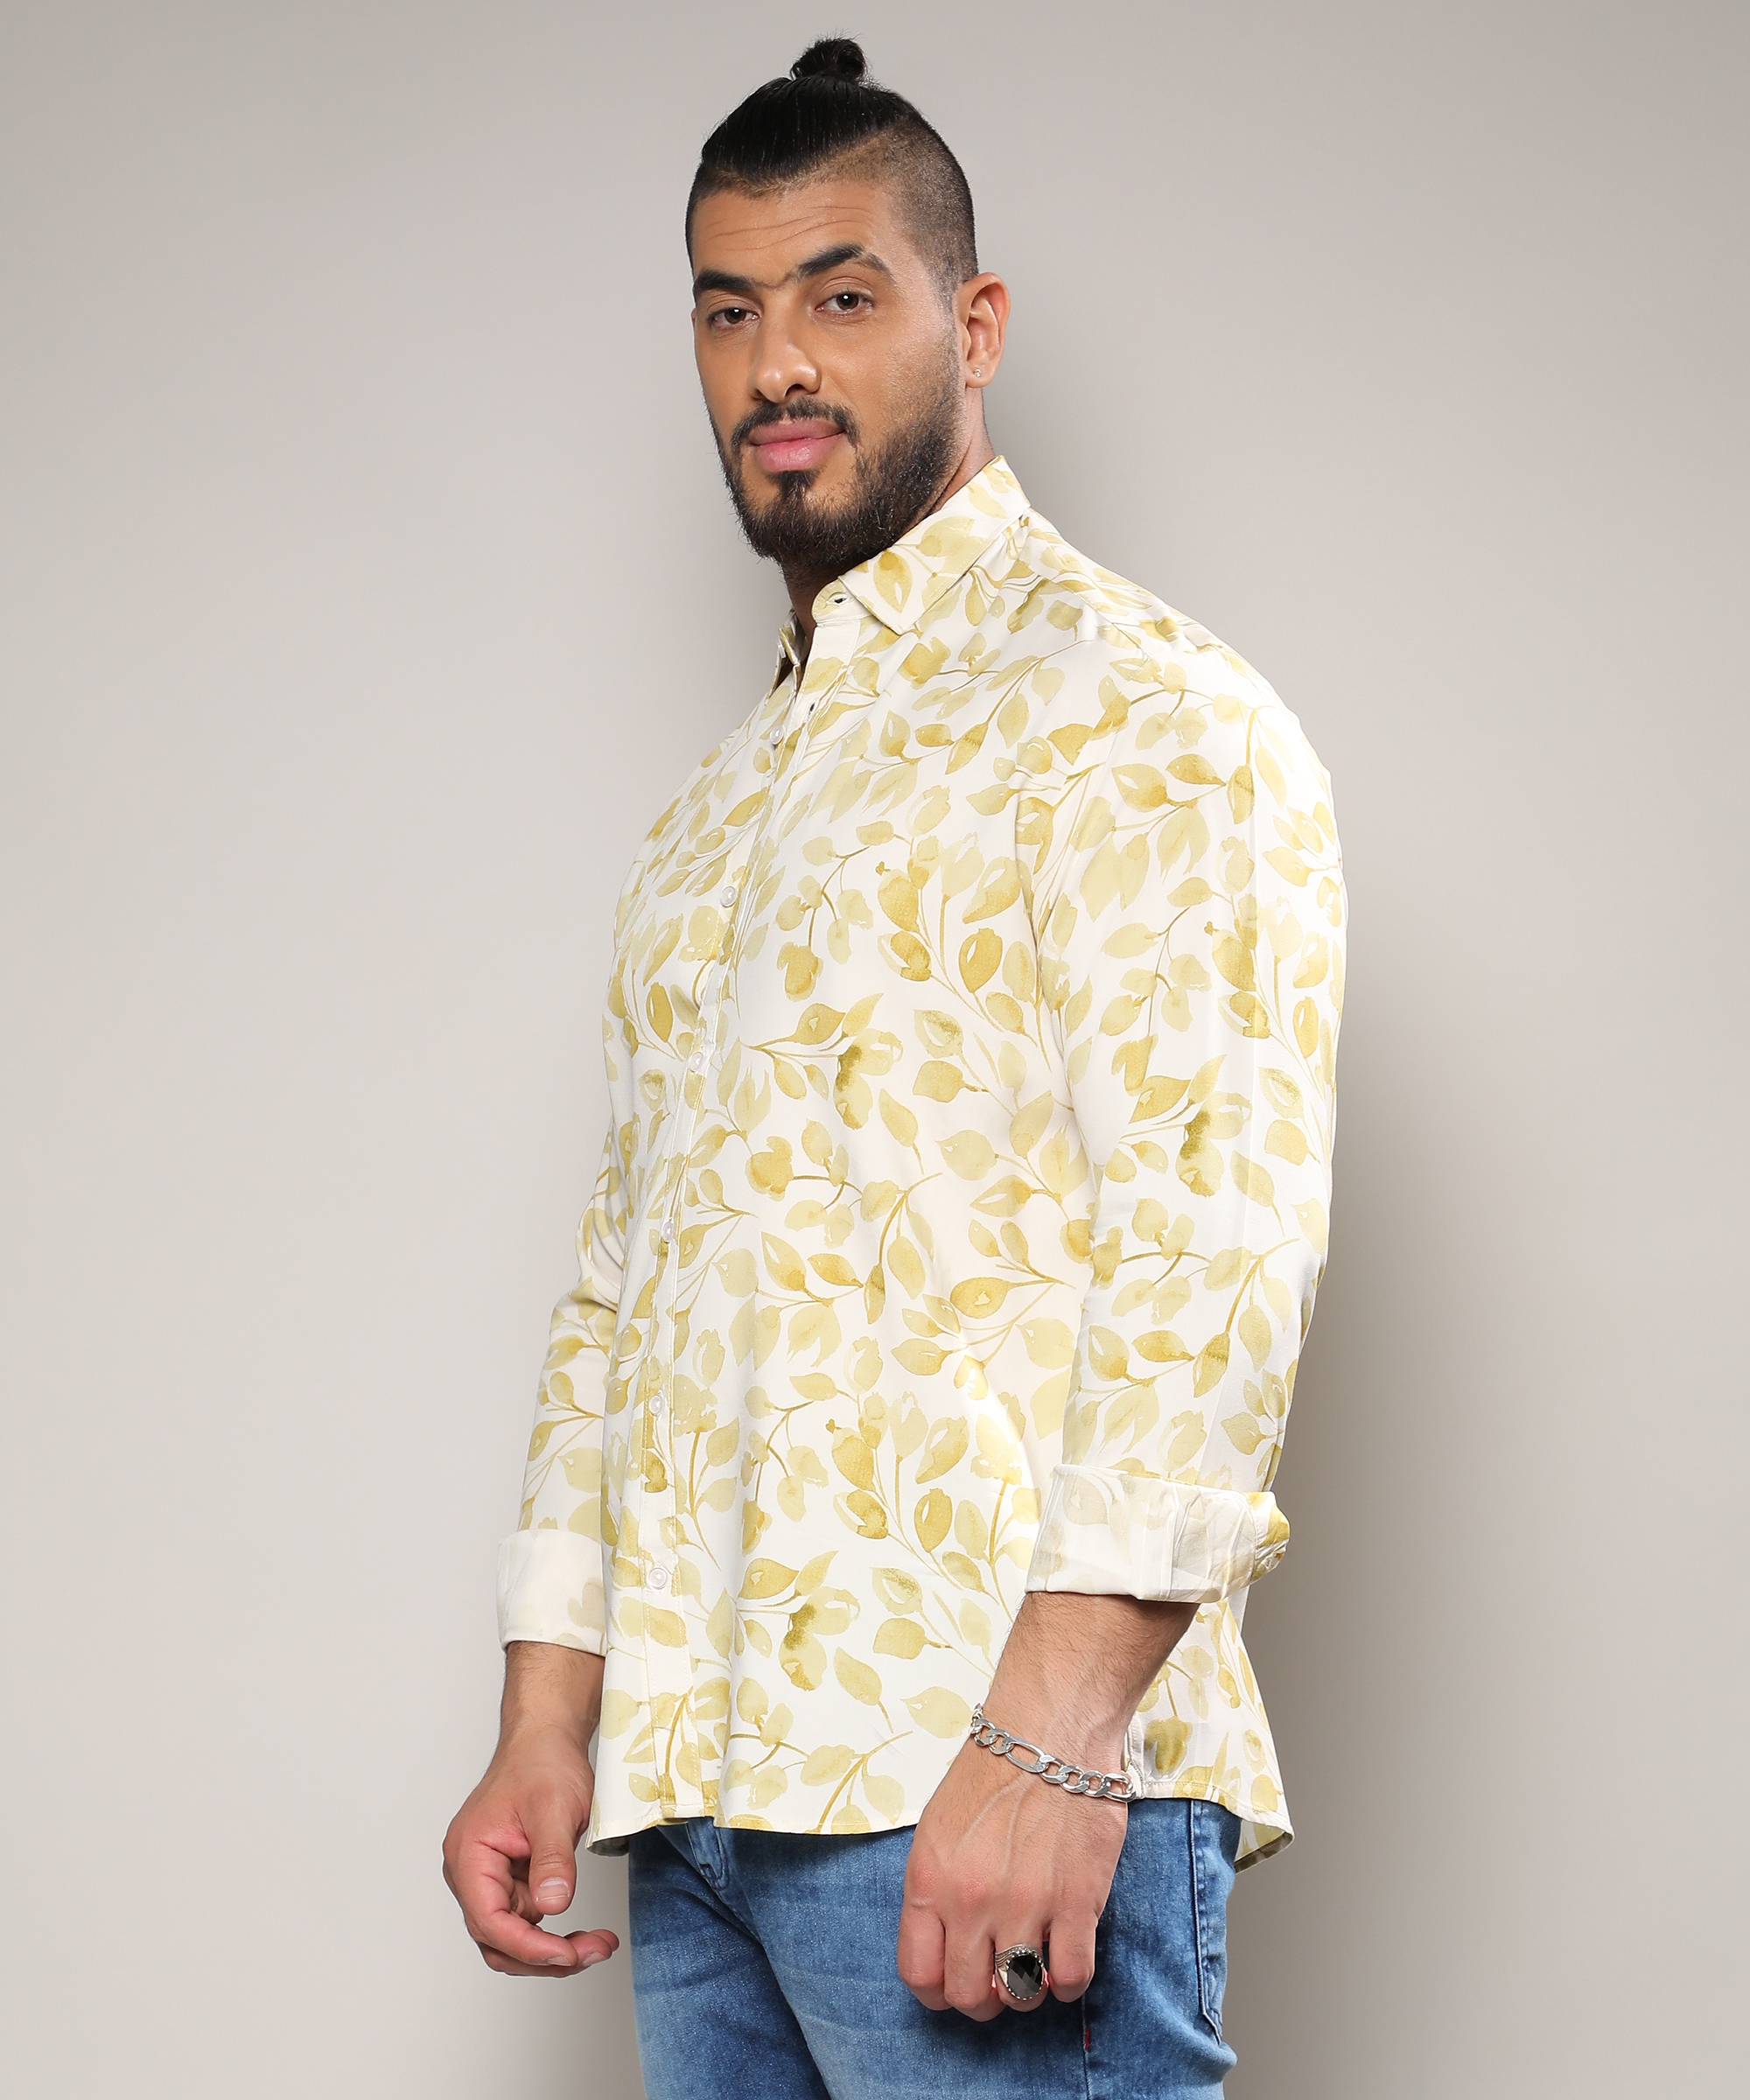 Instafab Plus | Men's Artistic Foliage Print Button Up Shirt